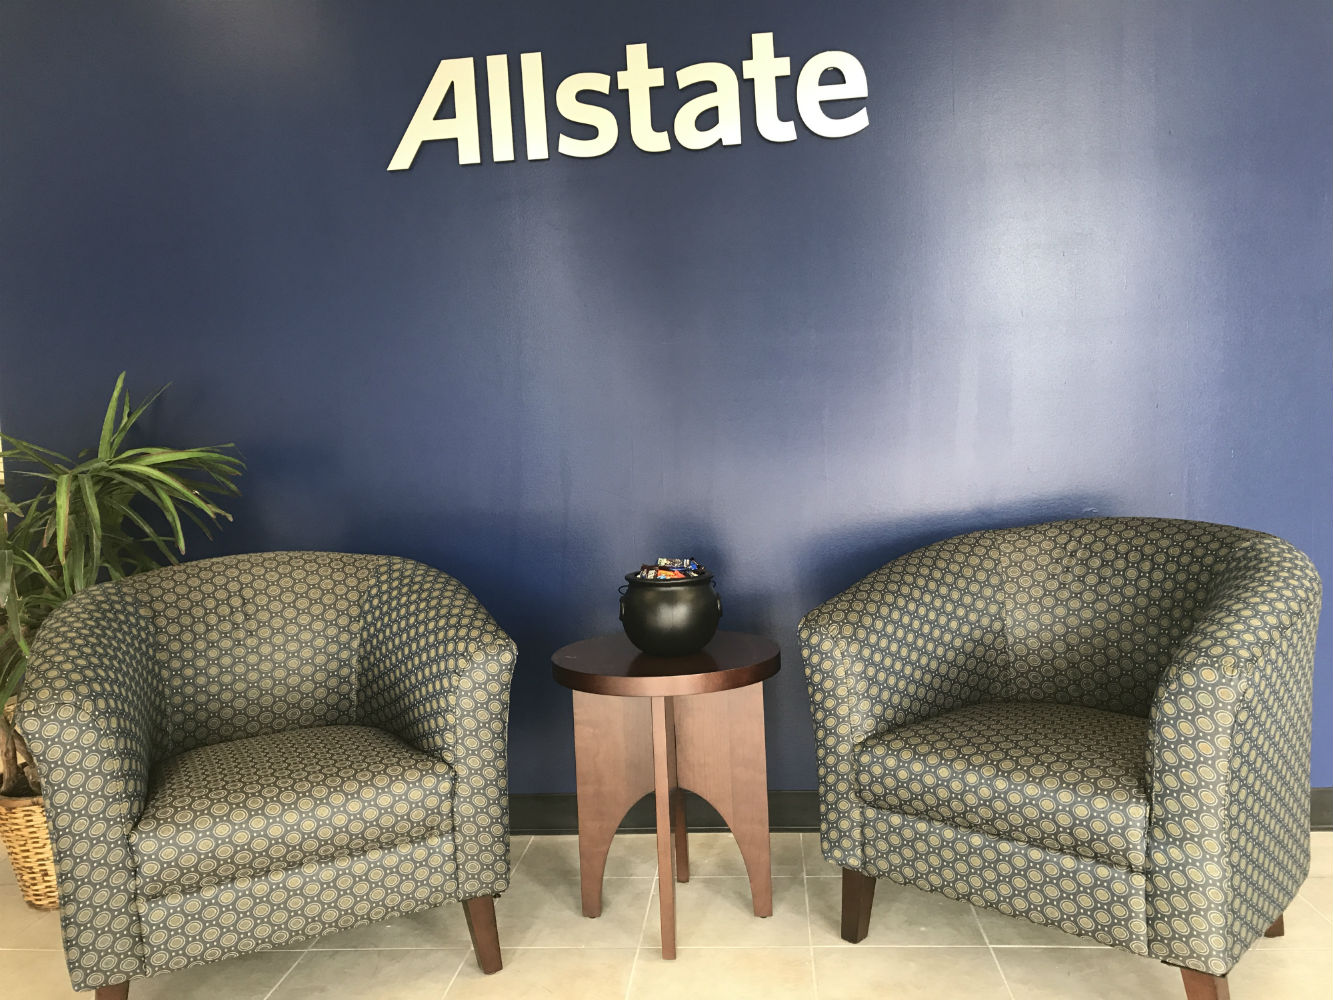 Luis Martinez: Allstate Insurance Photo